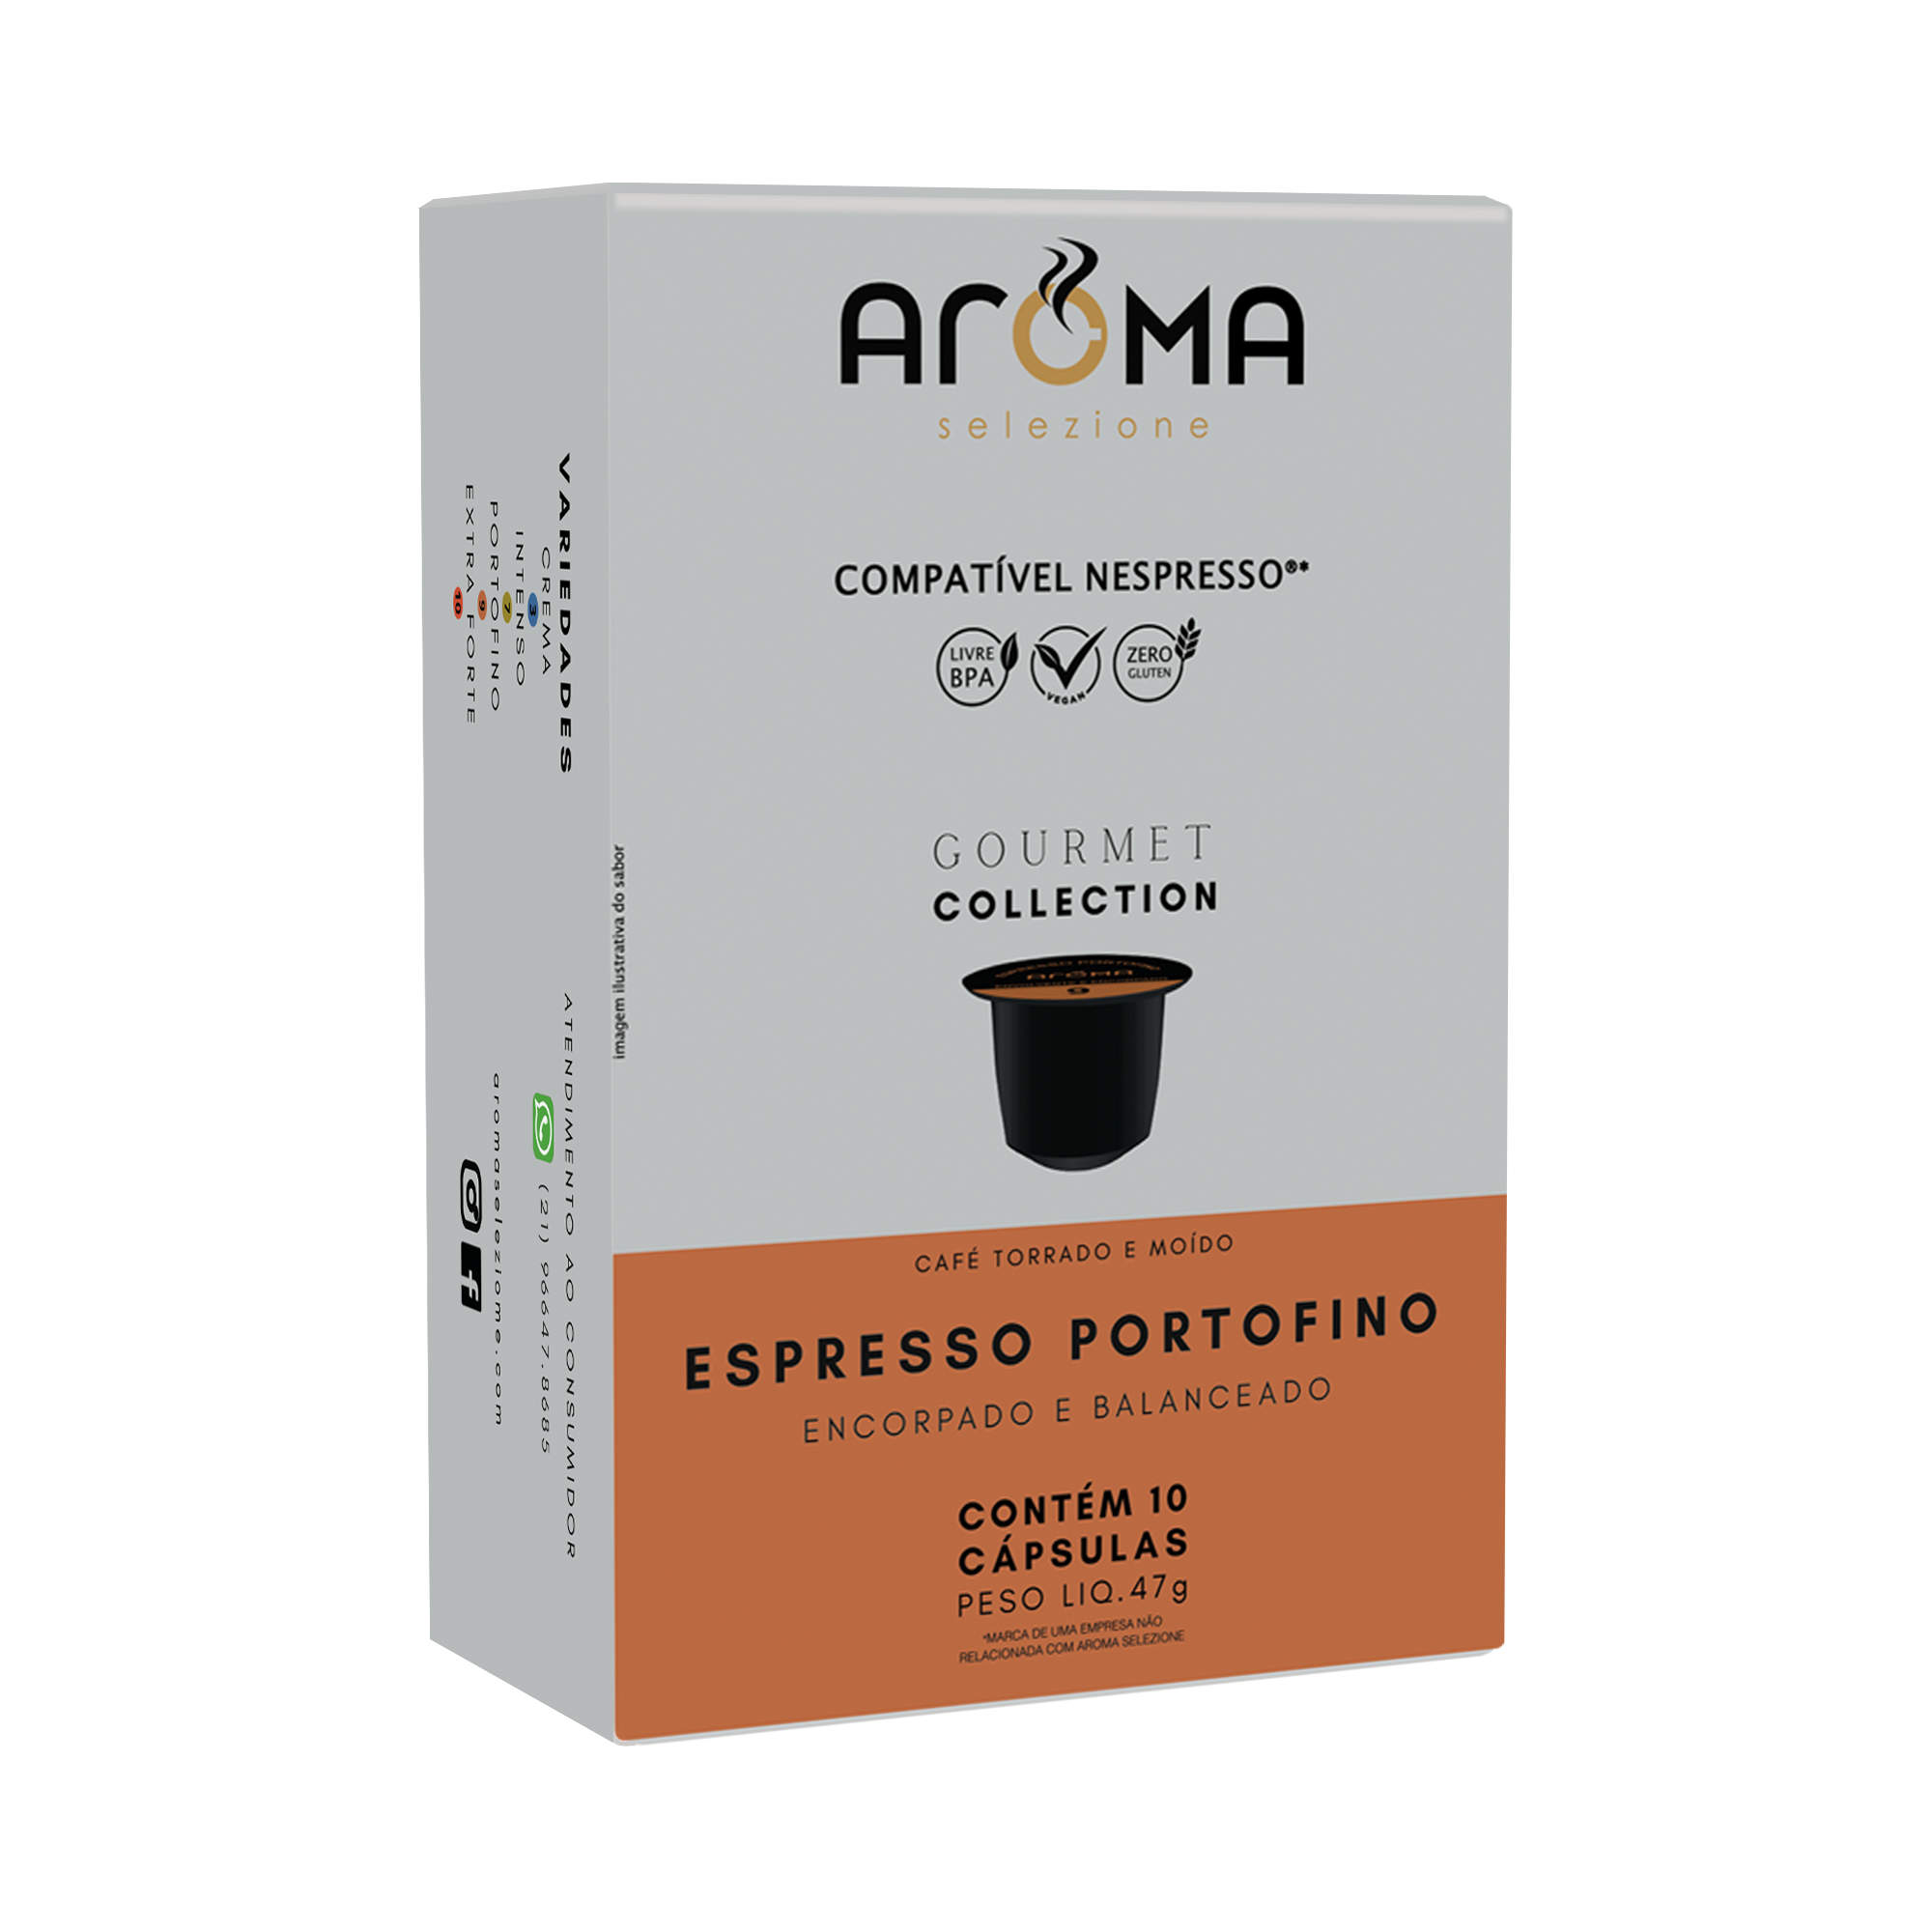 Caixa com 10 cápsulas para Nespresso ®* - Espresso Portofino